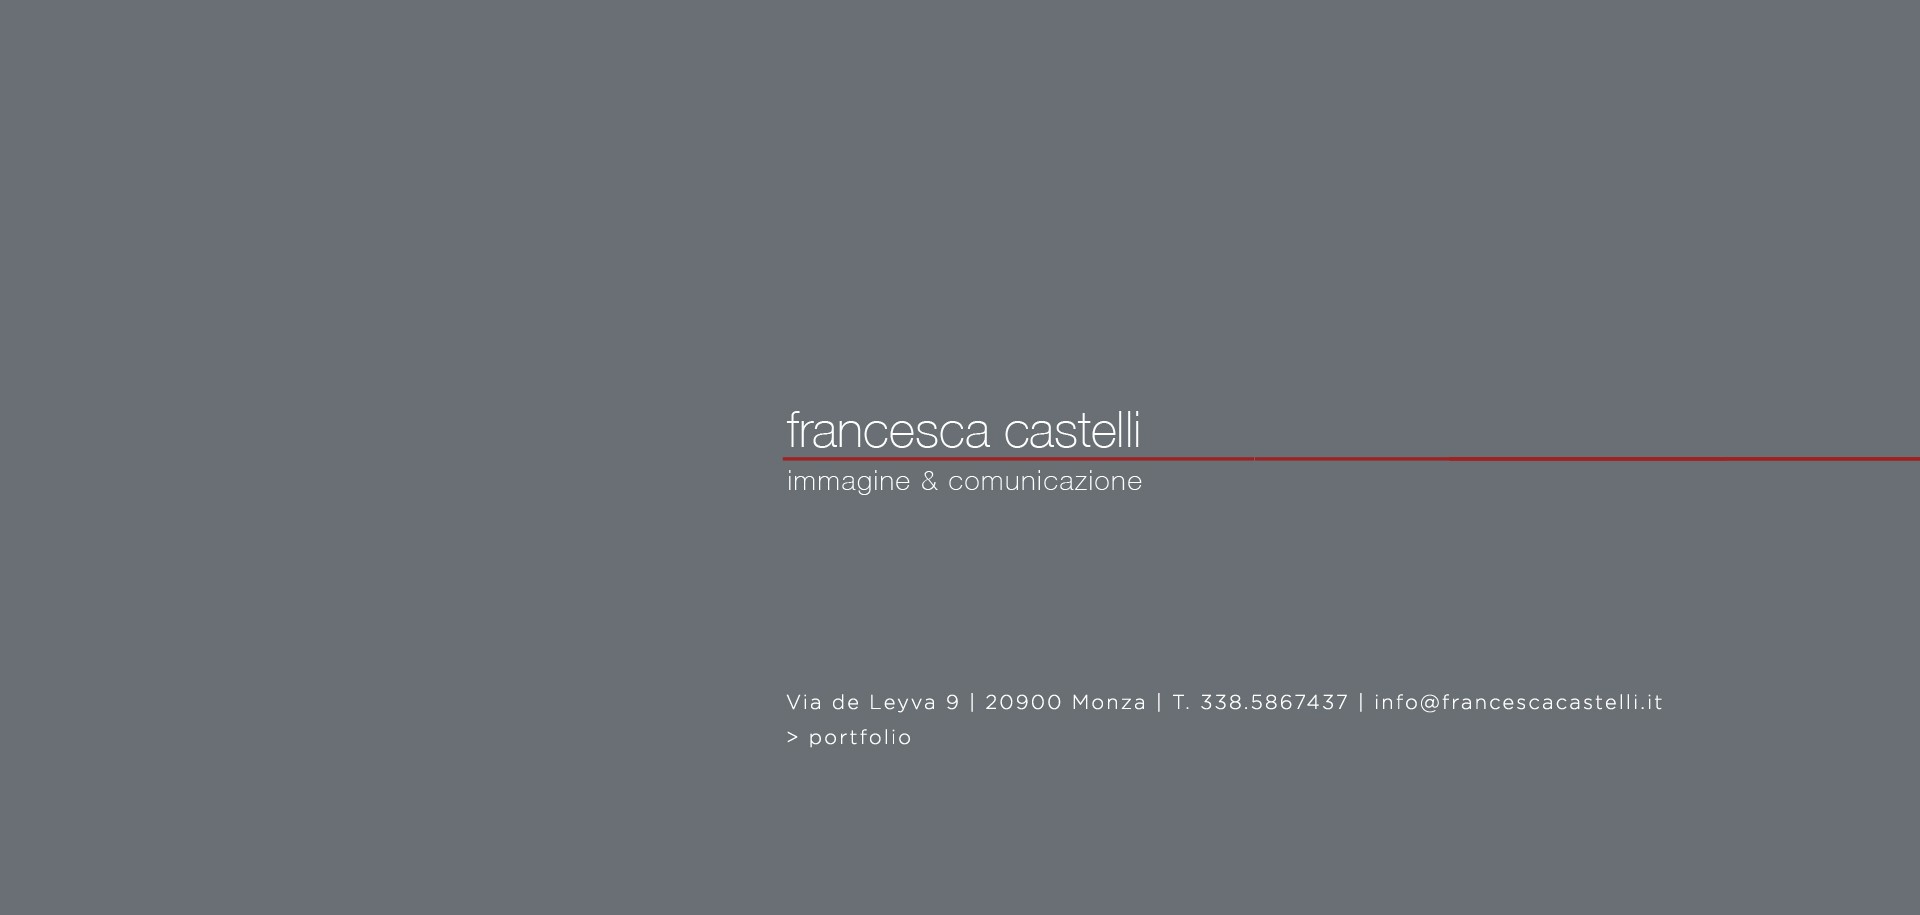 Francesca Castelli